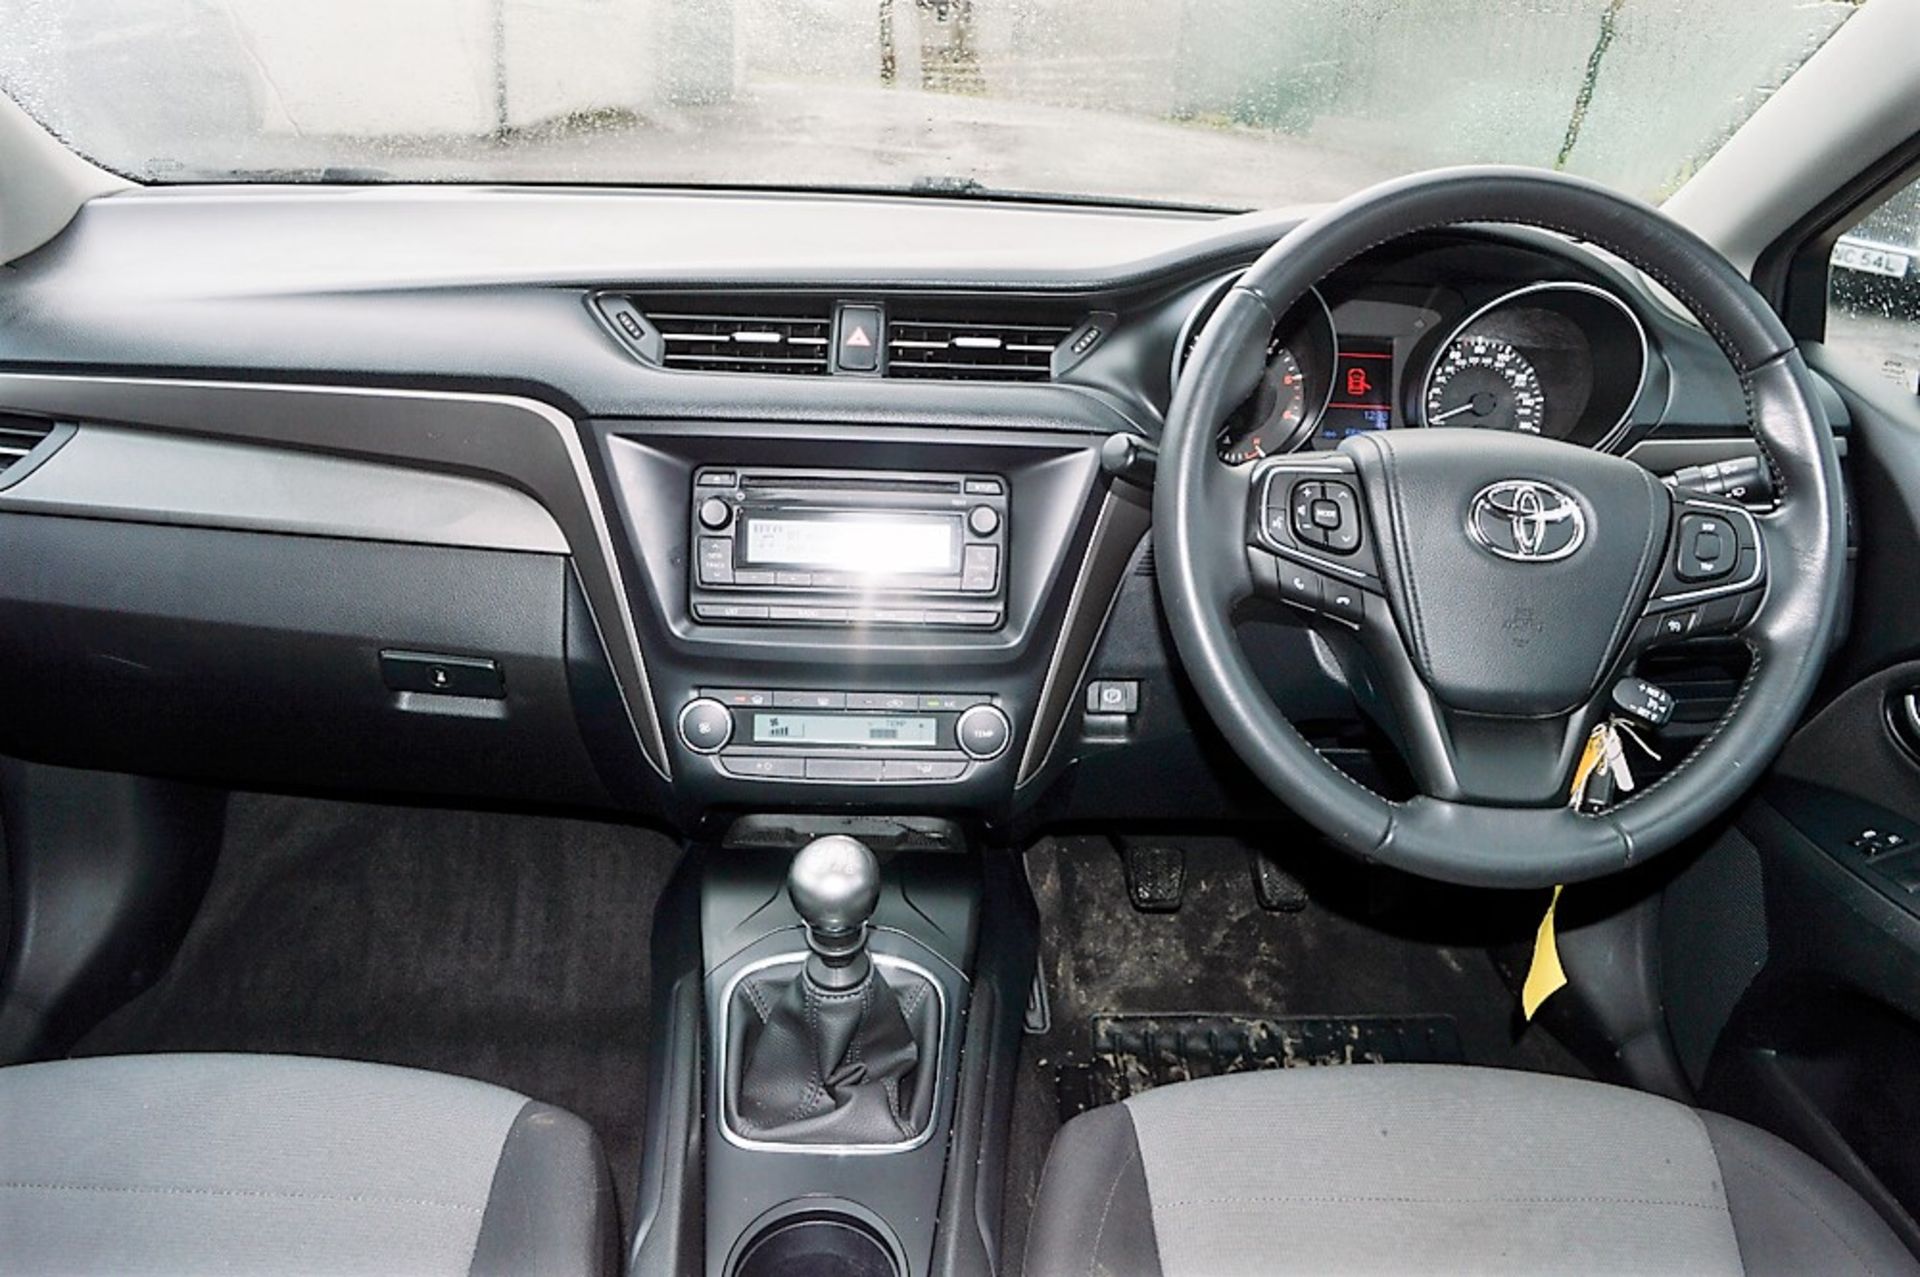 Toyota Avensis Active D-4D 5 door estate car   Registration number: MM65 SFY Date of Registration: - Image 9 of 10